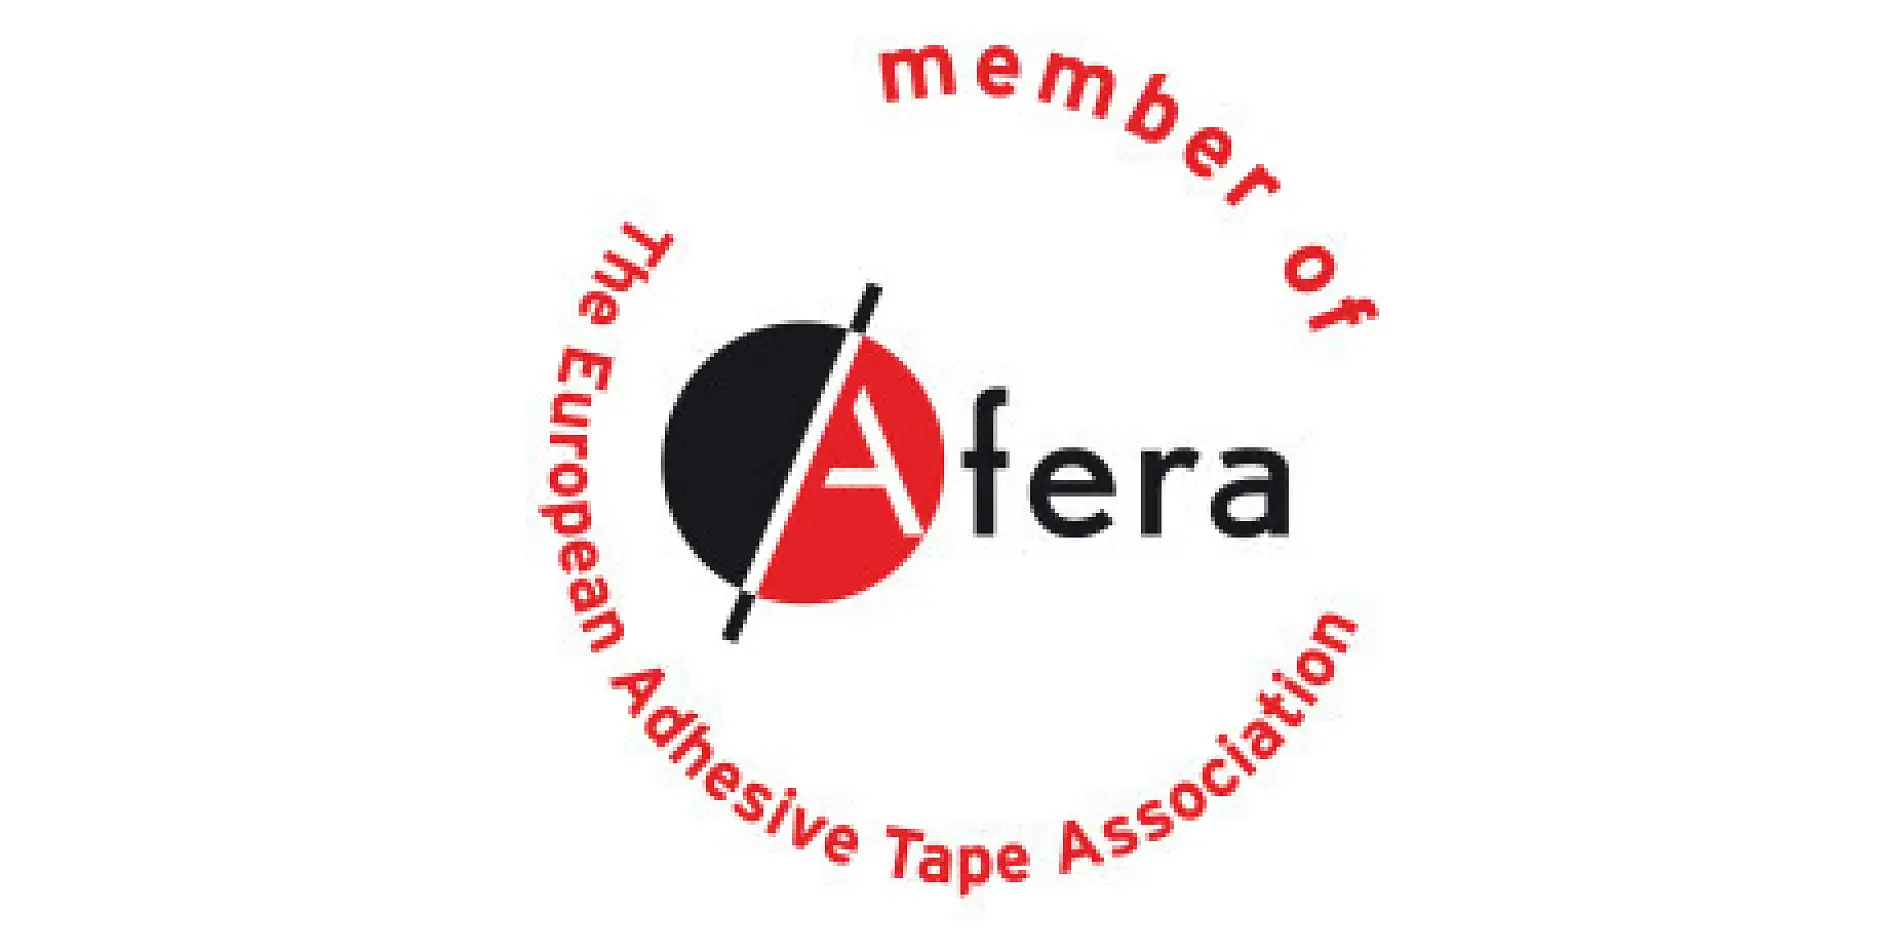 A tesa é um membro da Afera - a Associação Europeia da Indústria de Fita Adesiva. Entre os seus membros contam-se fabricantes, fornecedores de matérias-primas e máquinas, empresas transformadoras (impressão, guilhotinagem, corte e laminação de fita adesiva) e organizações nacionais do setor.